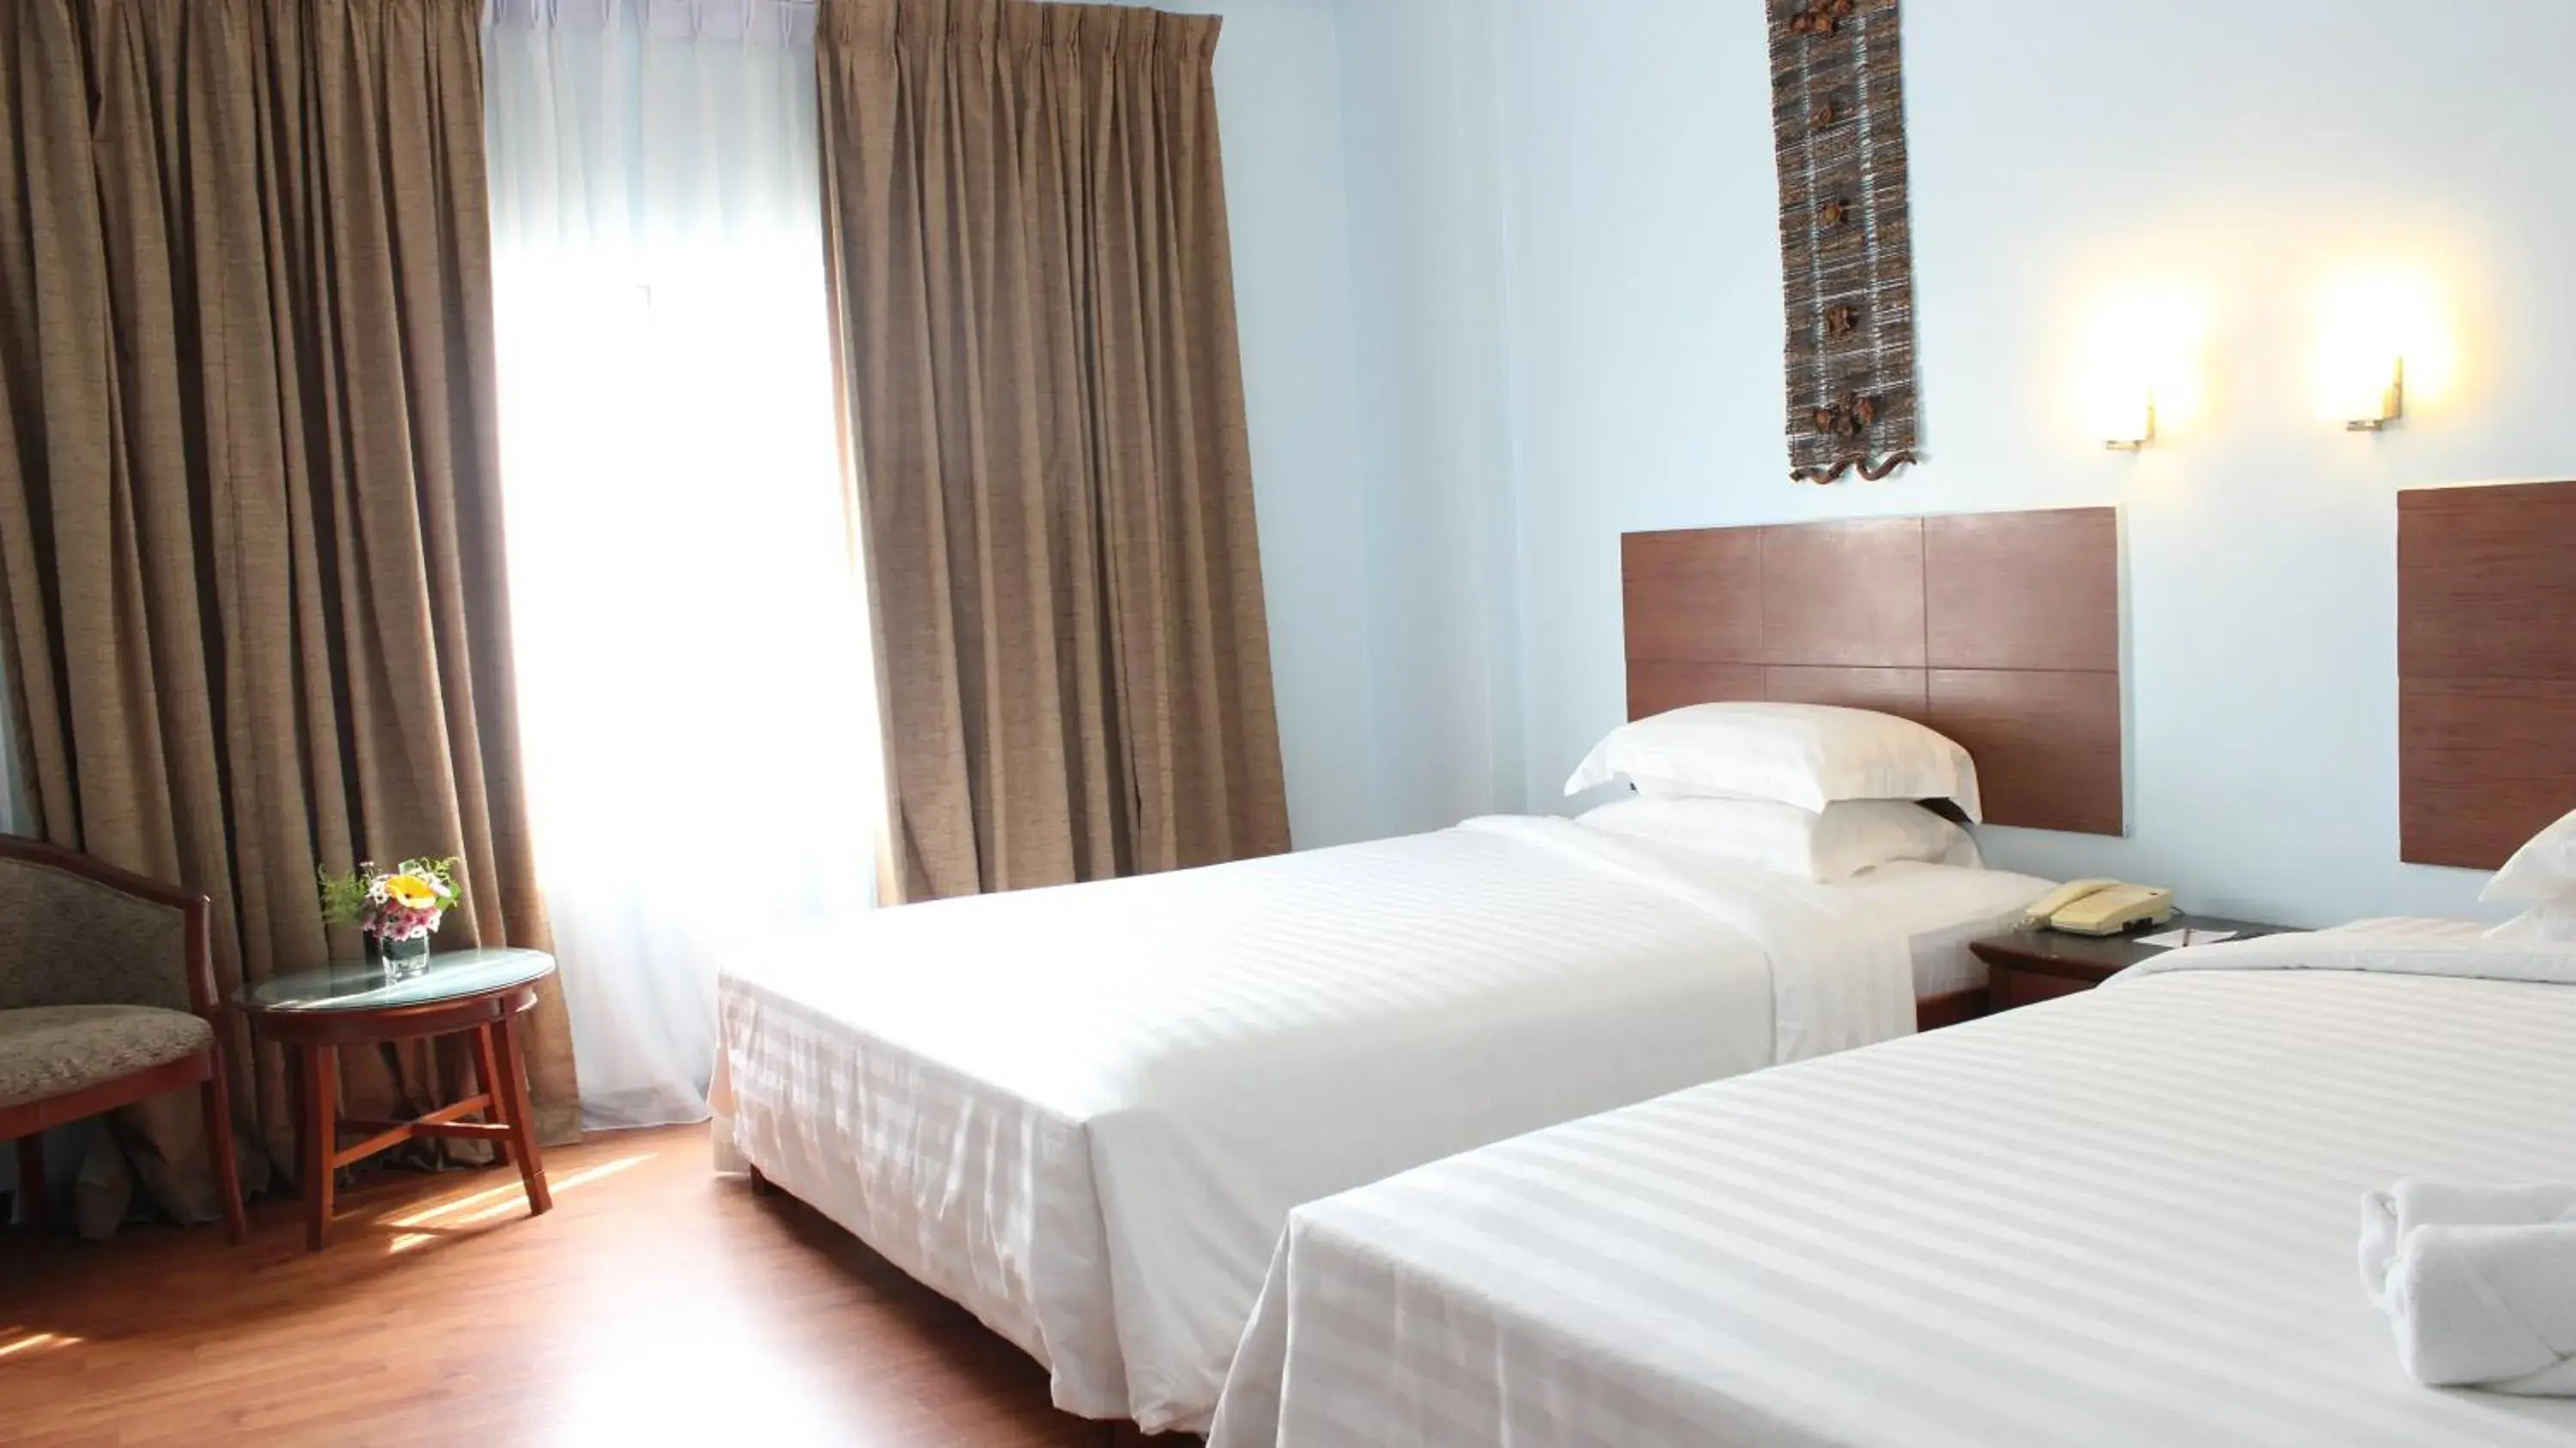 Deluxe Queen Room with Two Queen Beds in Hotel Maluri